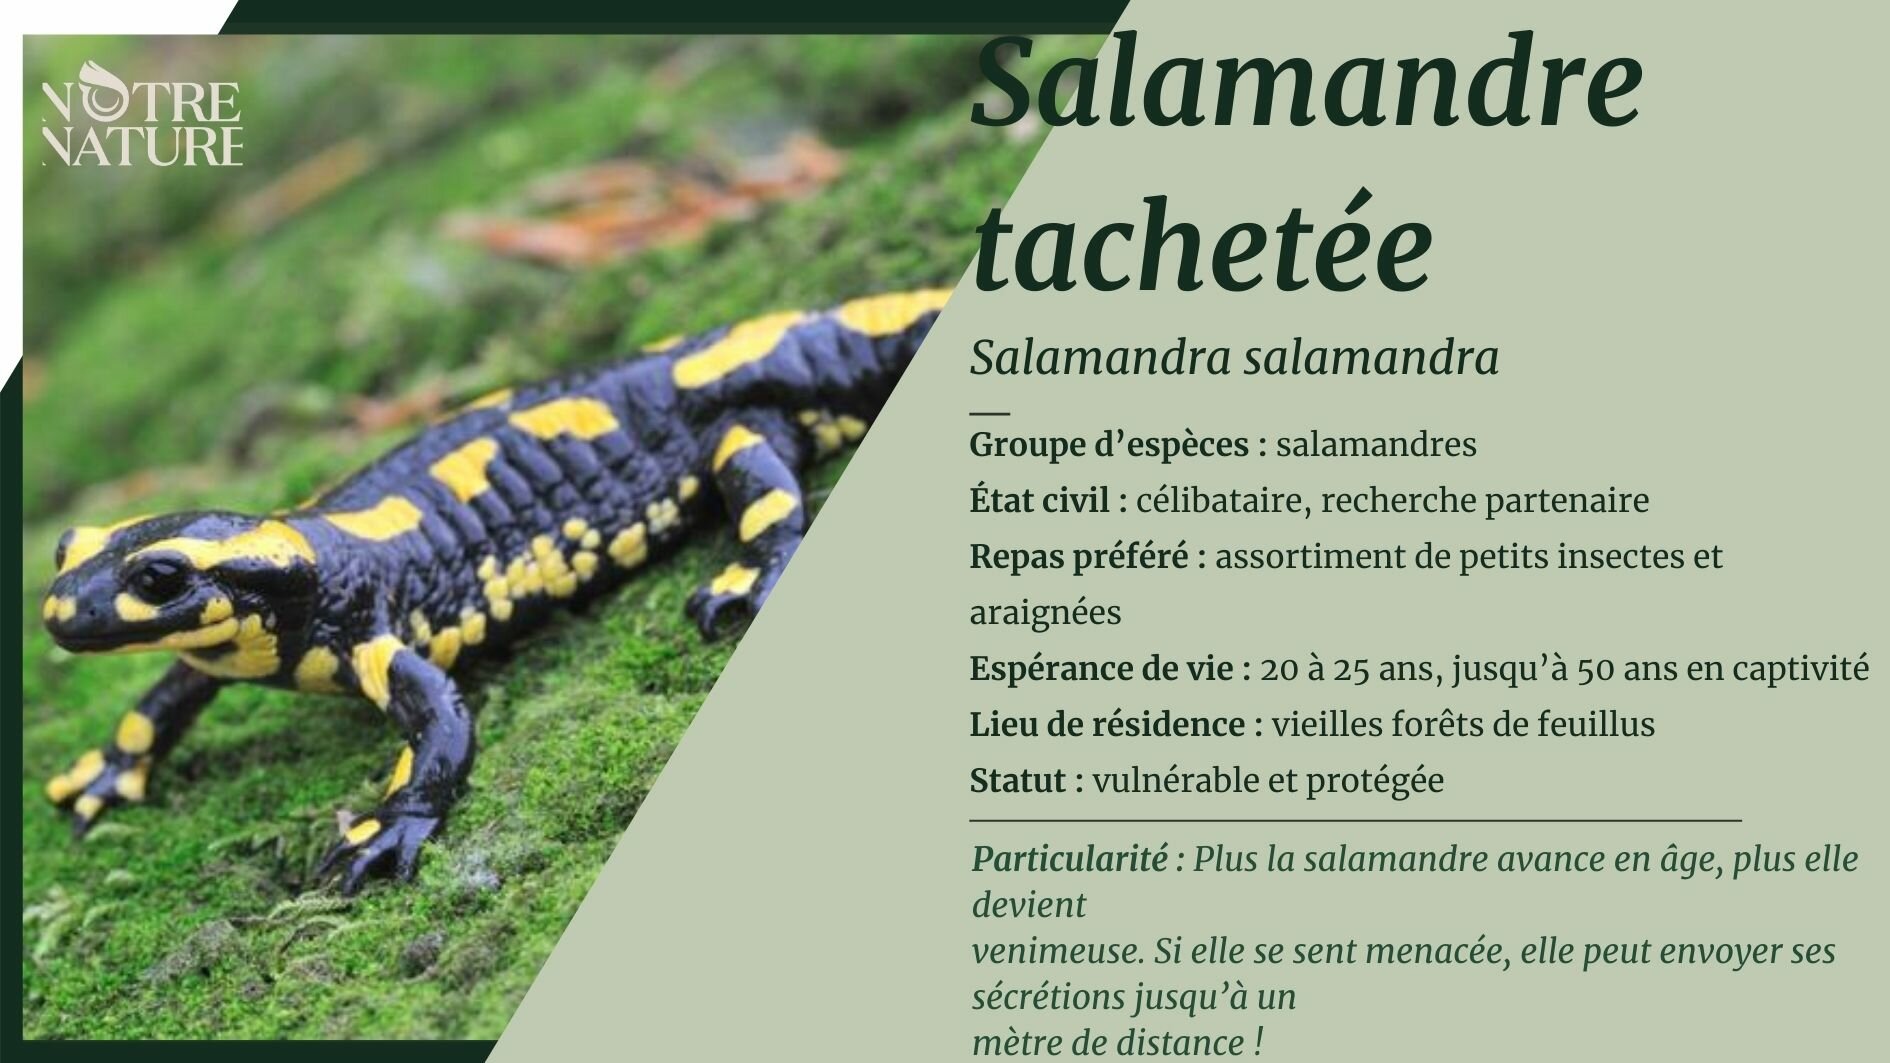 La Salamandre tachetée